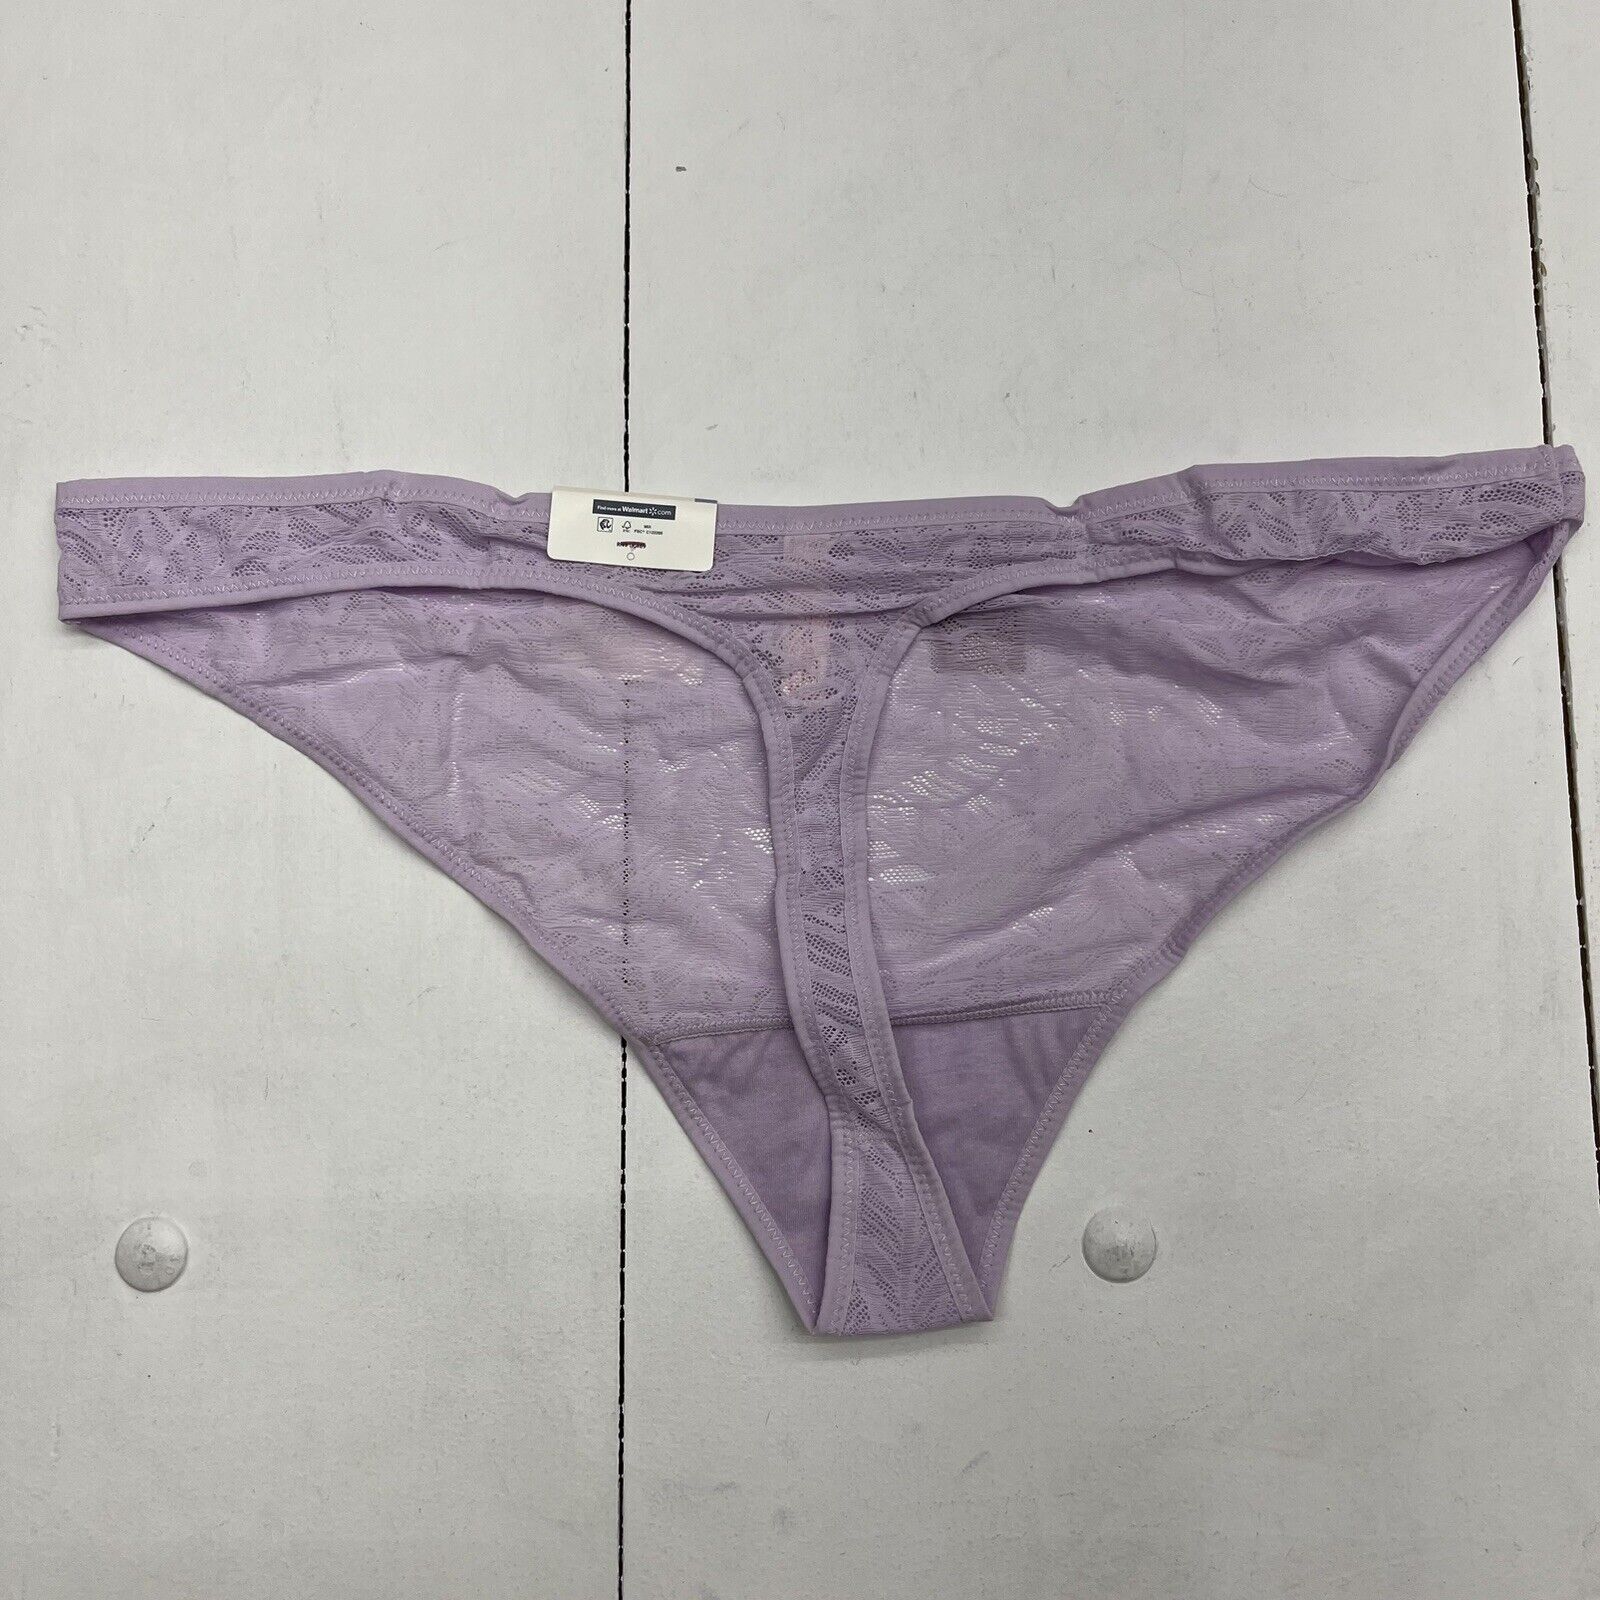 Secret Treasures Purple Lace Leaf Thong Panties Women's Size XXL